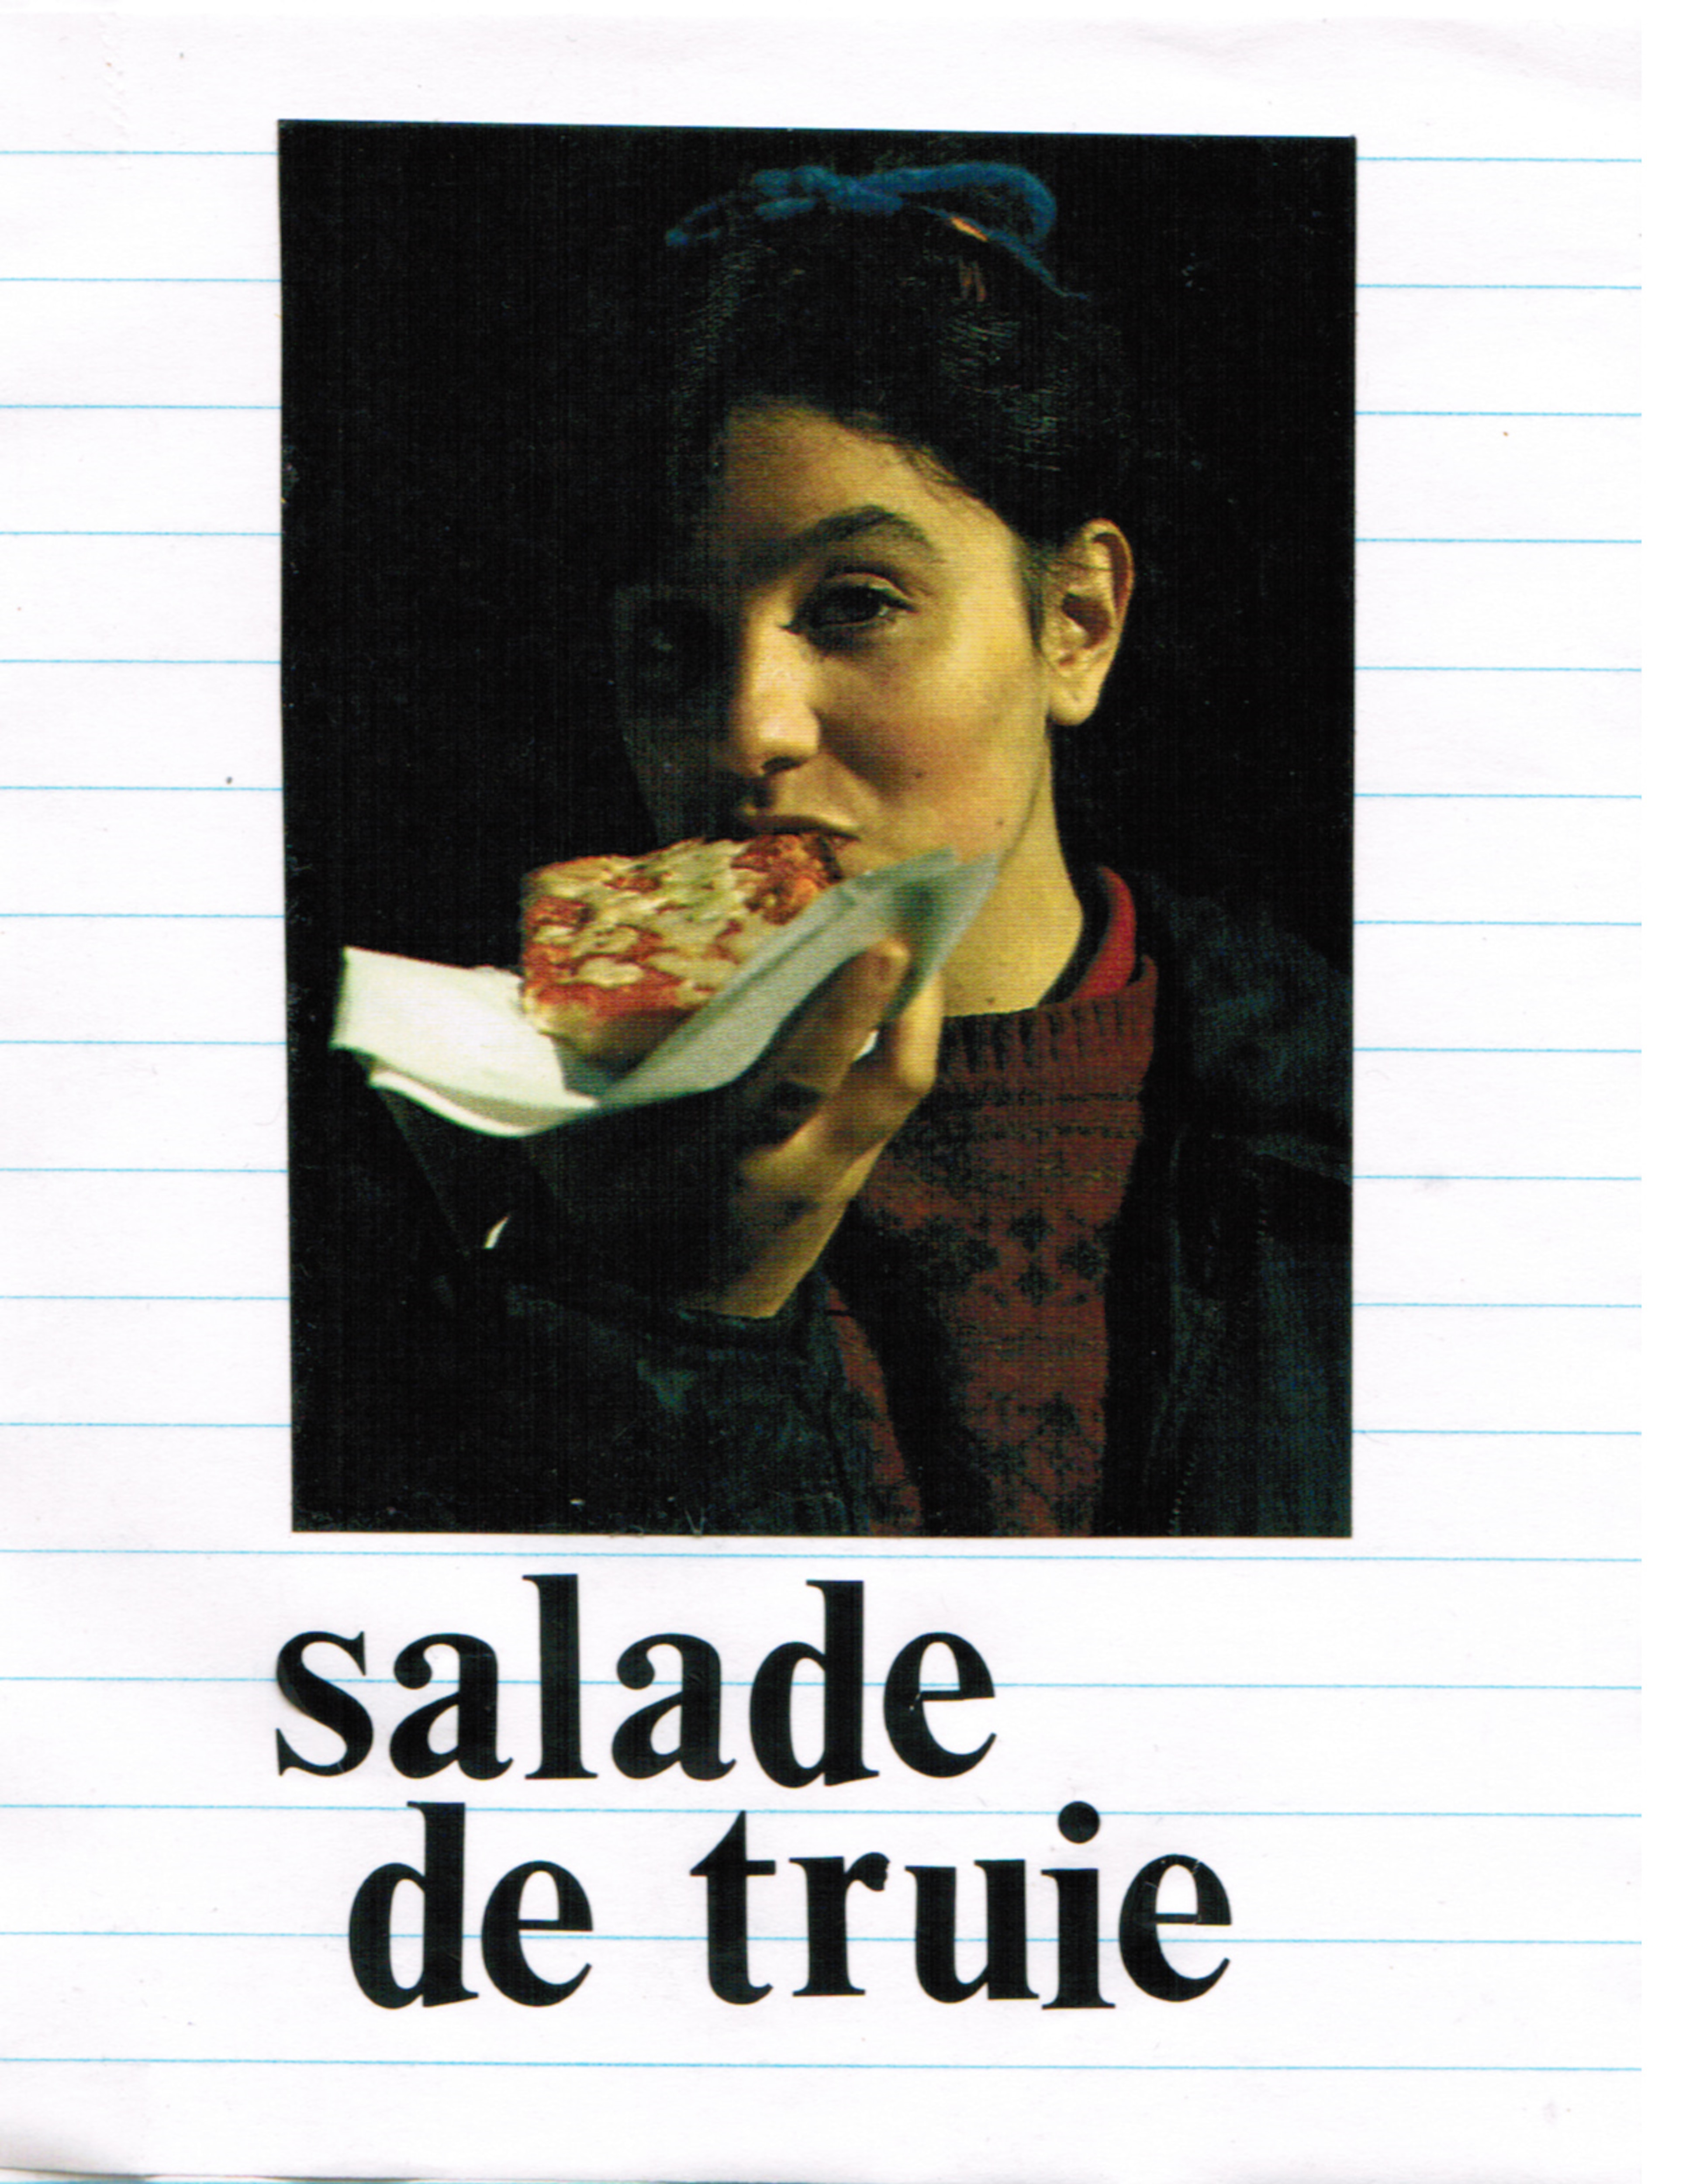 Le fanzine « Salade de truie », de Sara Hébert